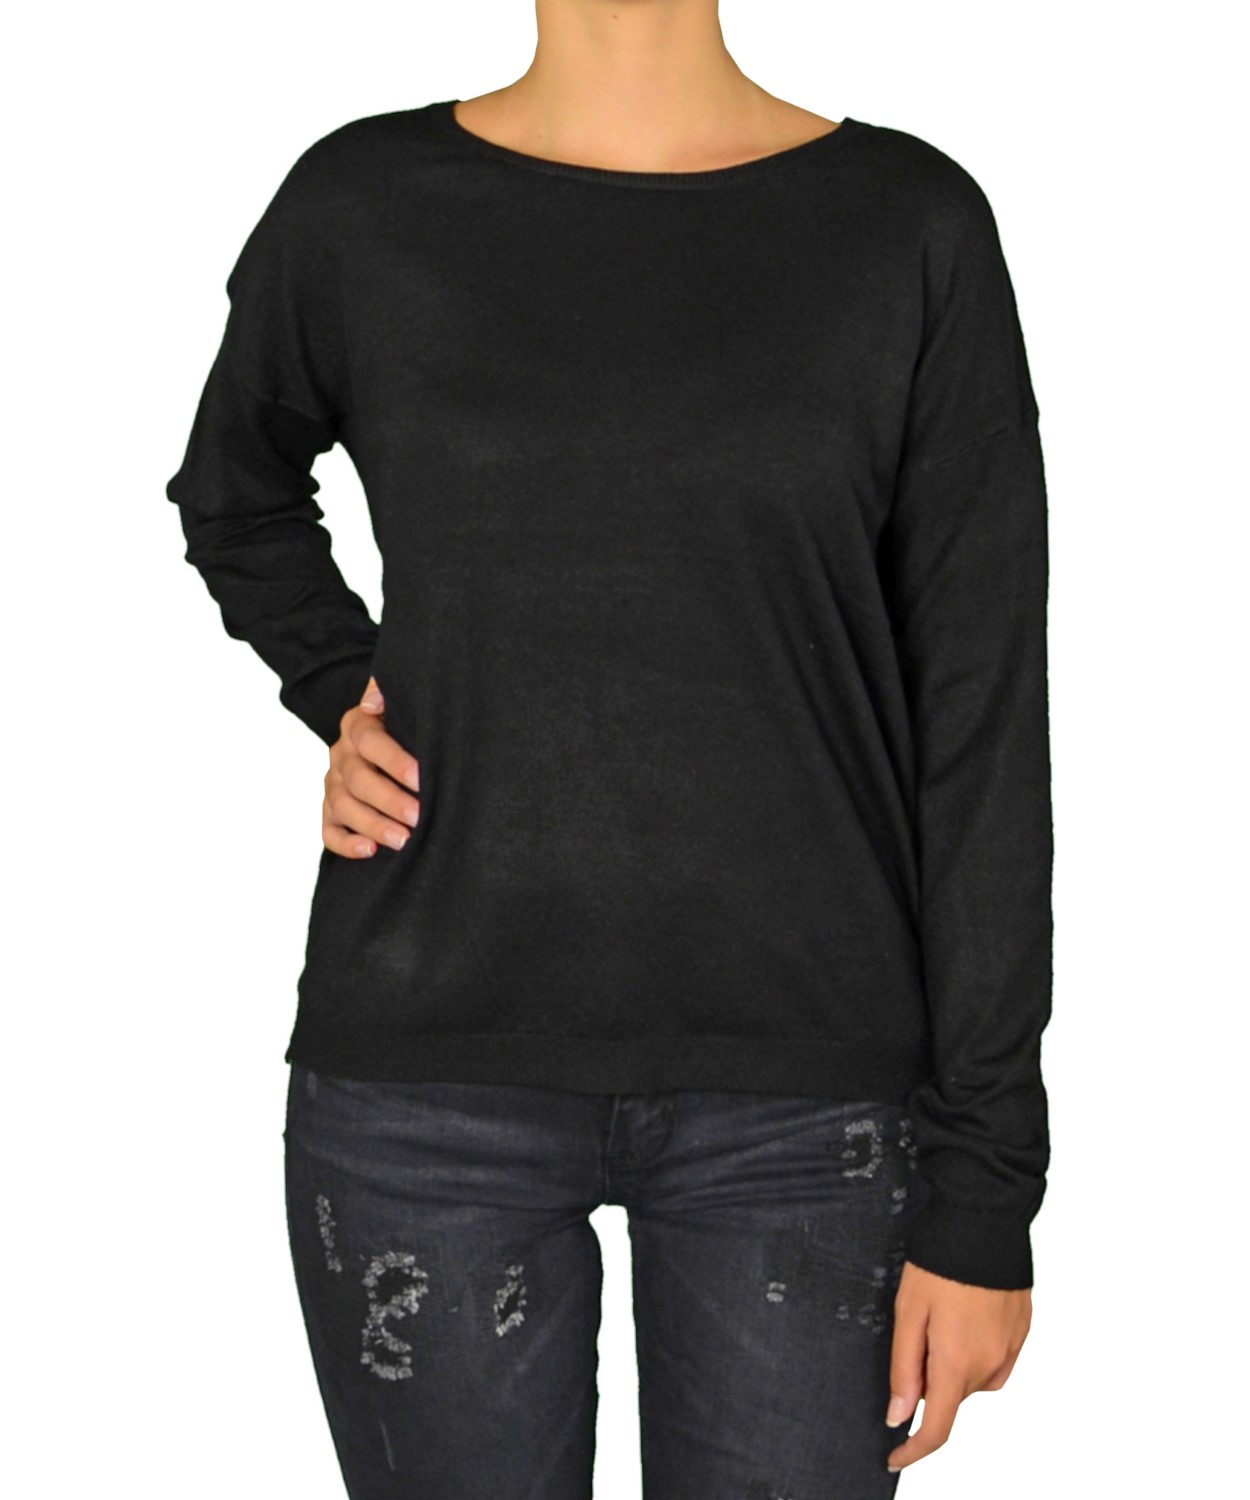 Γυναικεία πλεκτή μακρυμάνικη μπλούζα μαύρη MX3003F